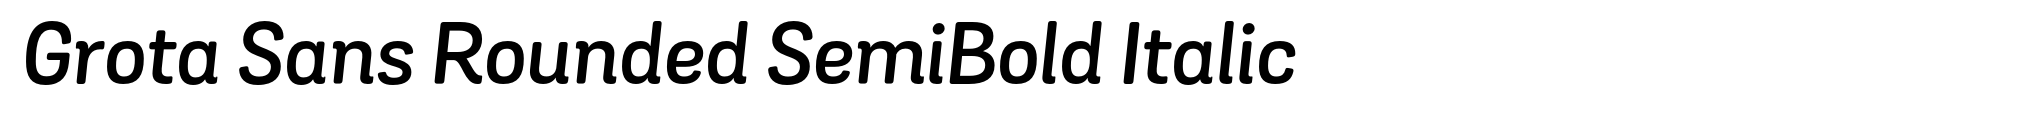 Grota Sans Rounded SemiBold Italic image